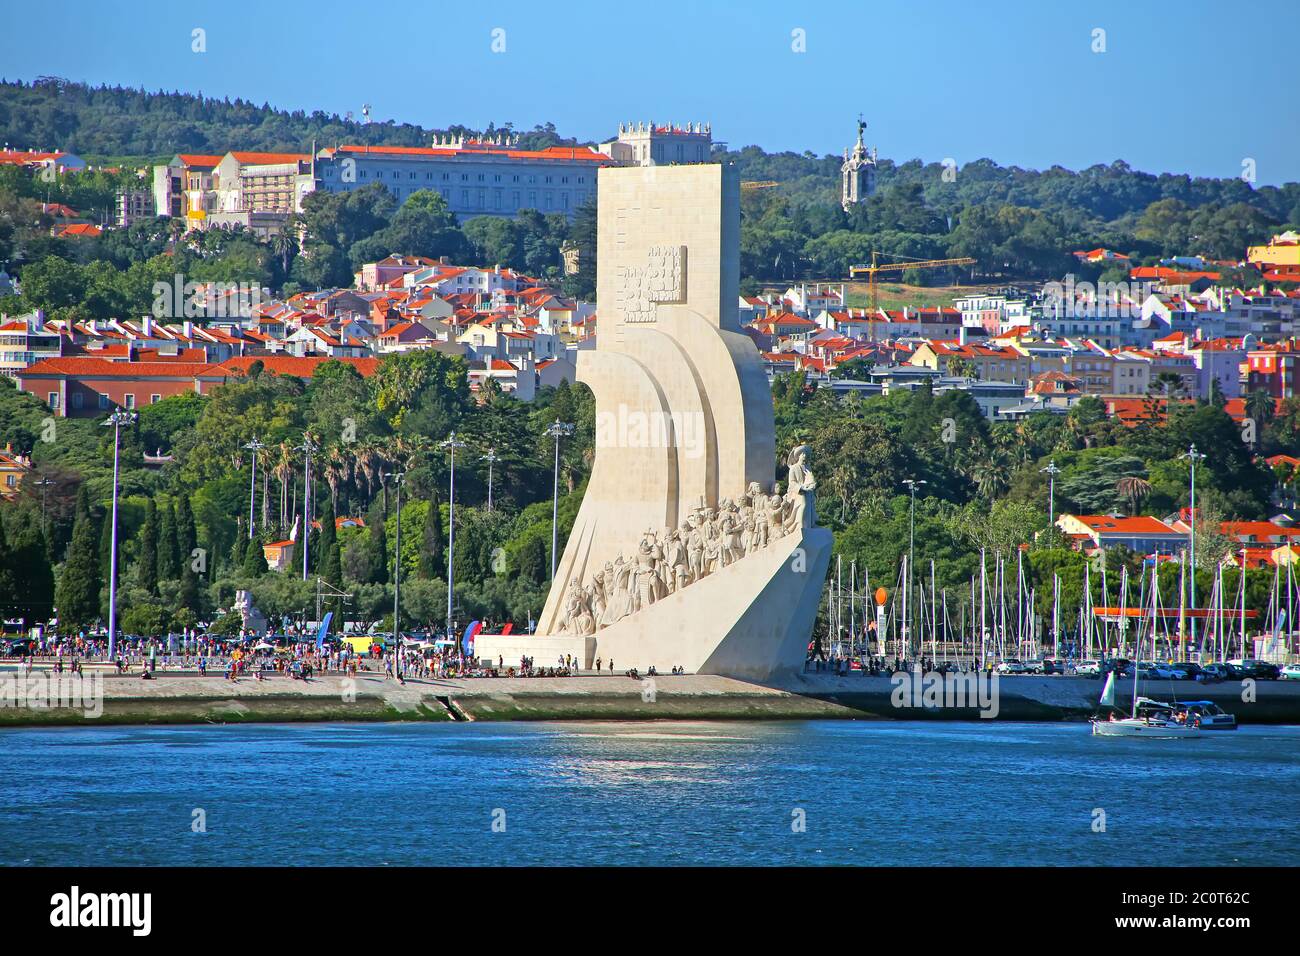 Padrao dos Descobrimentos oder Monument der Entdeckungen; am Ufer des Flusses Tejo mit der Stadt im Hintergrund, Belem, Lissabon, Portugal. Stockfoto